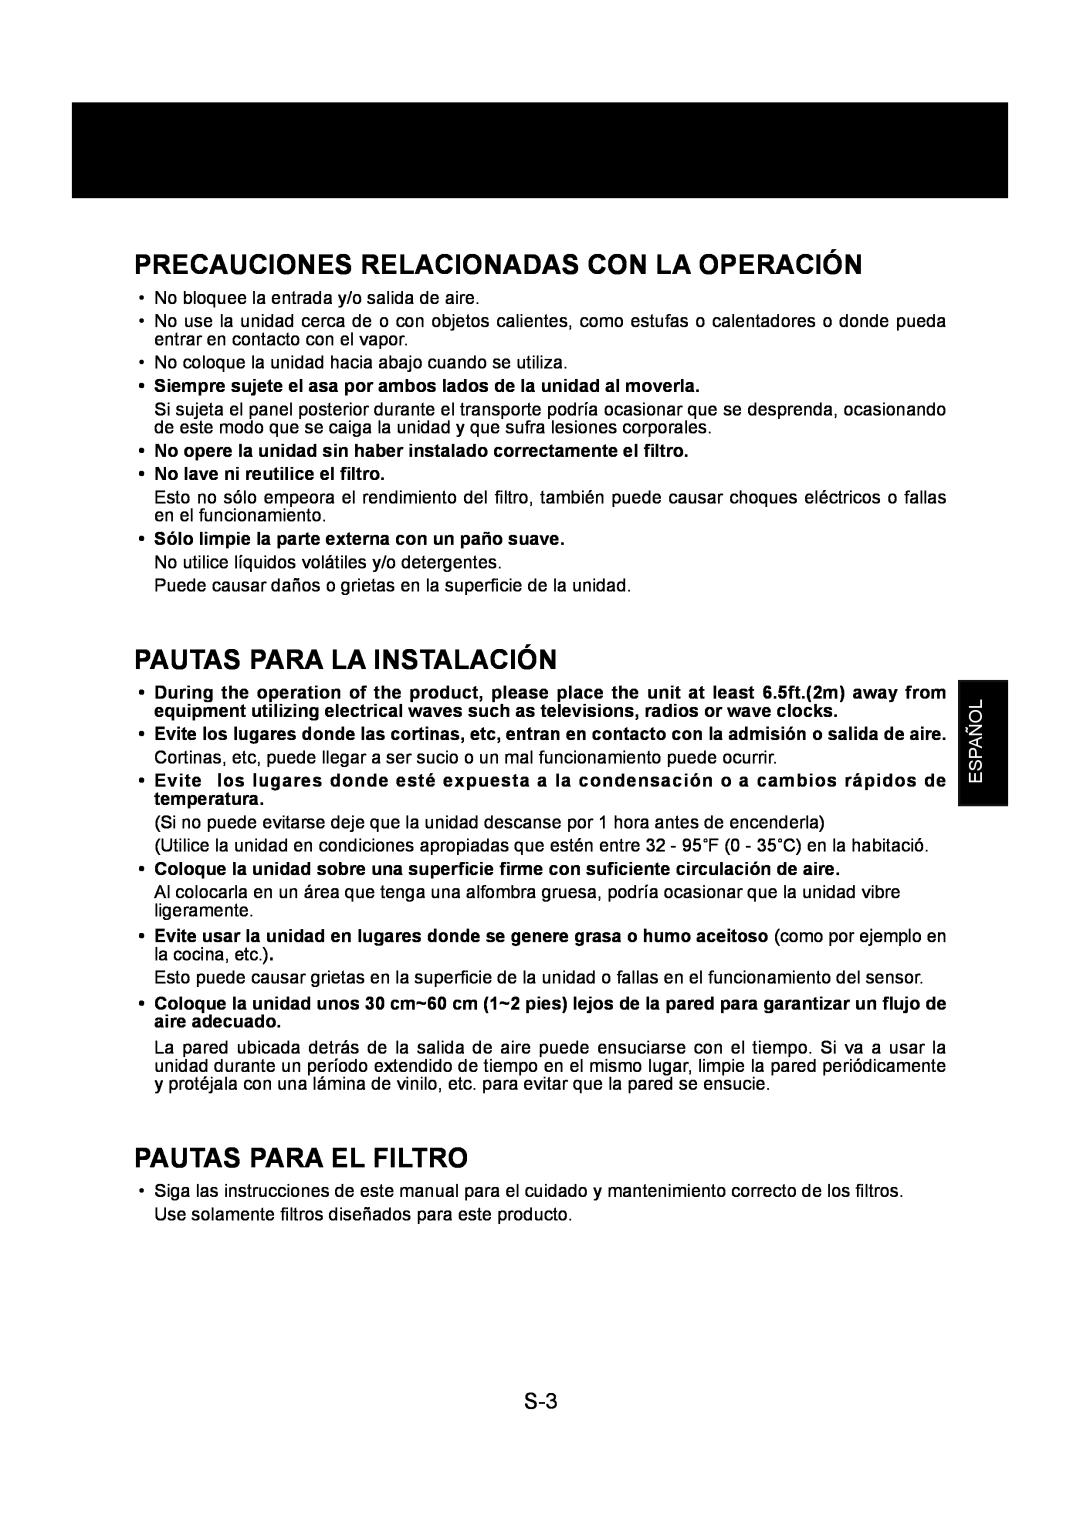 Sharp FP-P30U Precauciones Relacionadas Con La Operación, Pautas Para La Instalación, Pautas Para El Filtro, Español 